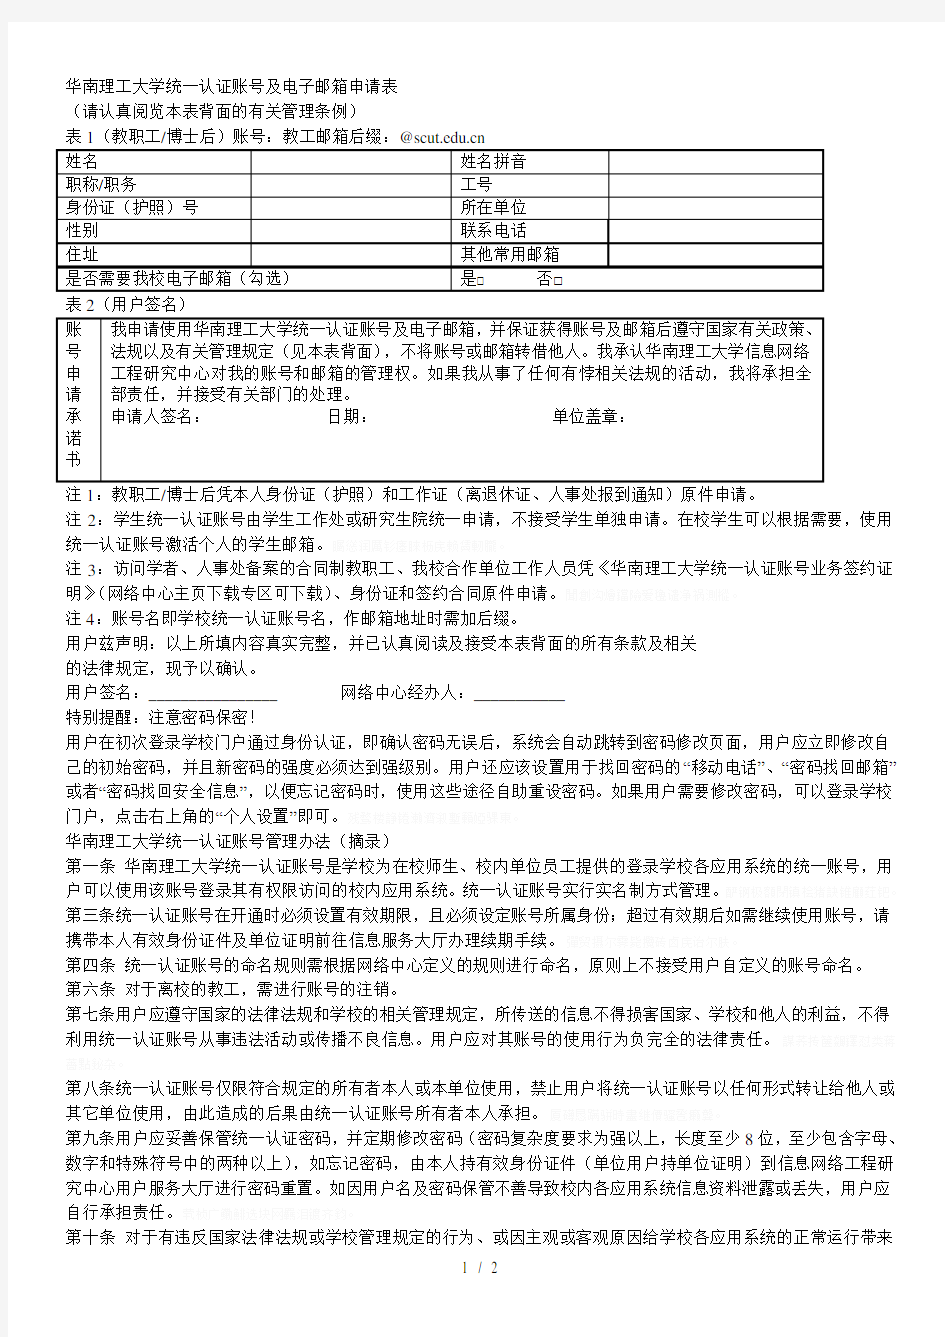 华南理工大学统一认证账号及电子邮箱申请表